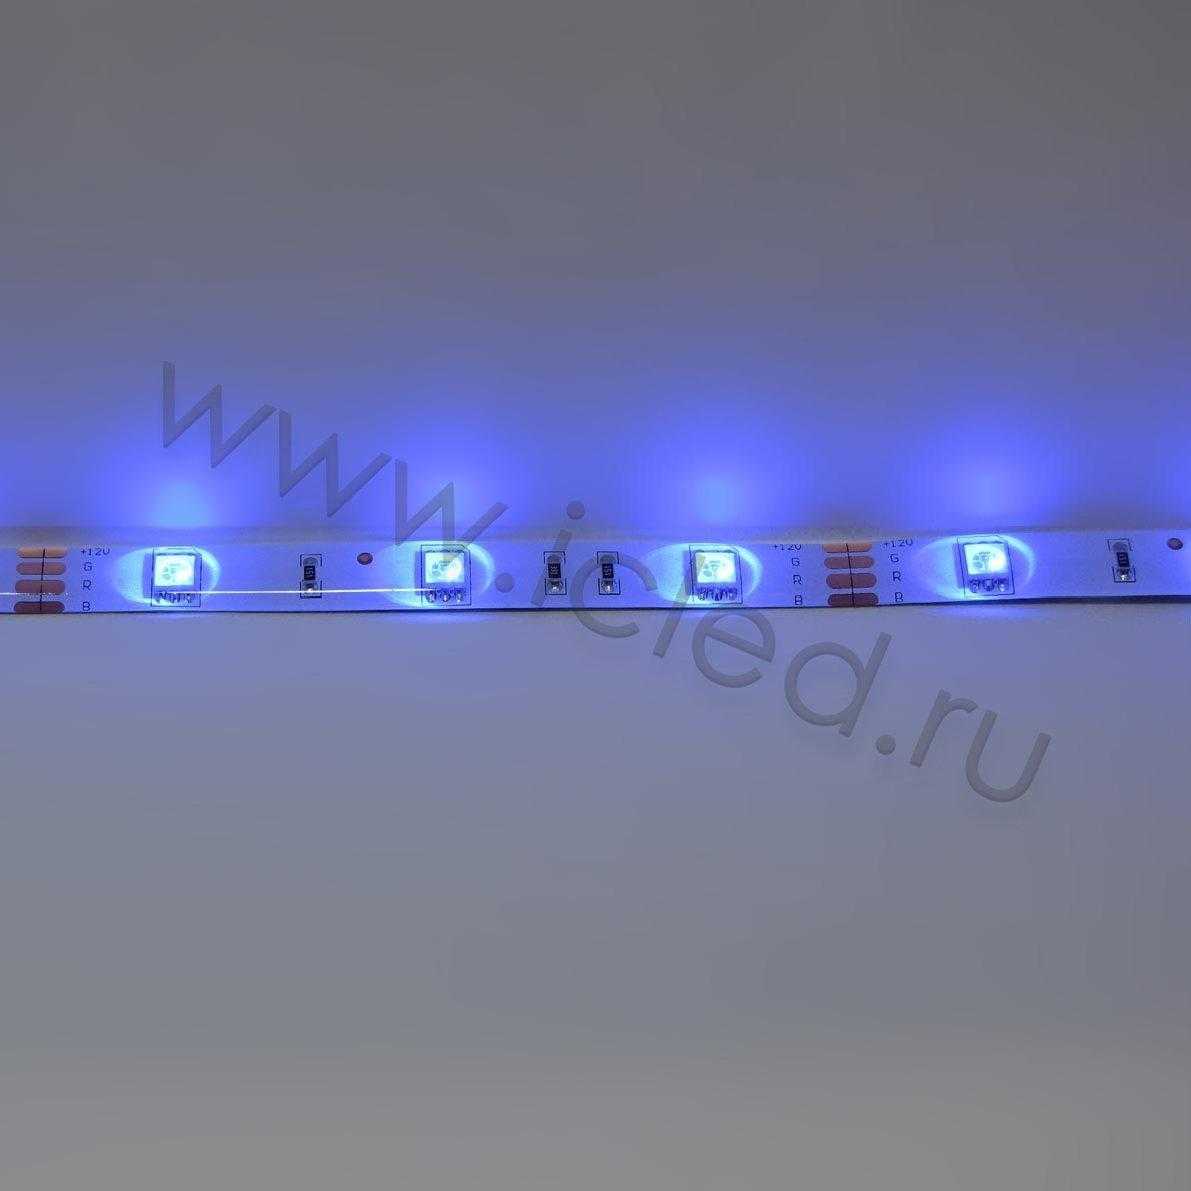 Влагозащищенные светодиодные ленты Светодиодная лента Standart class, 5050, 30led/m, RGB, 12V, IP65 Icled